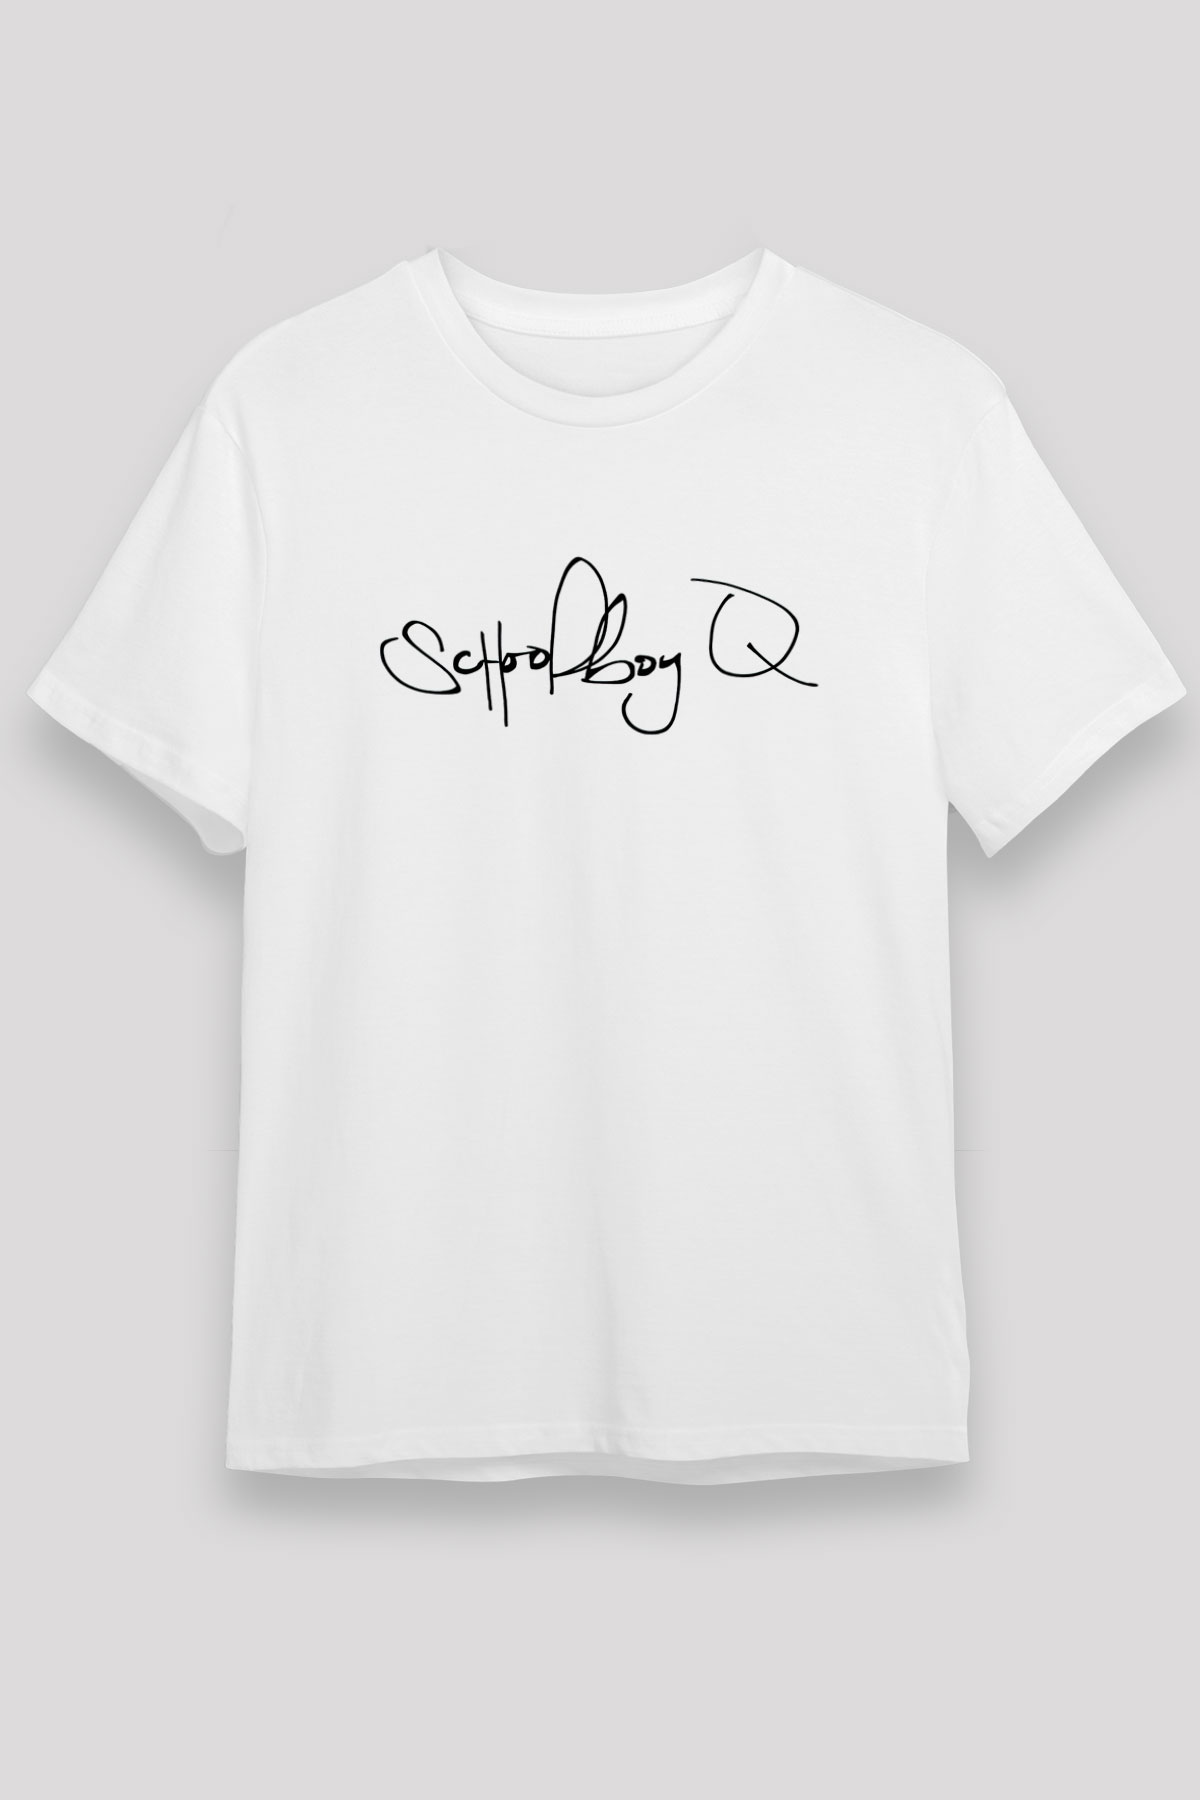 Schoolboy Q T shirt,Hip Hop,Rap Tshirt 12/